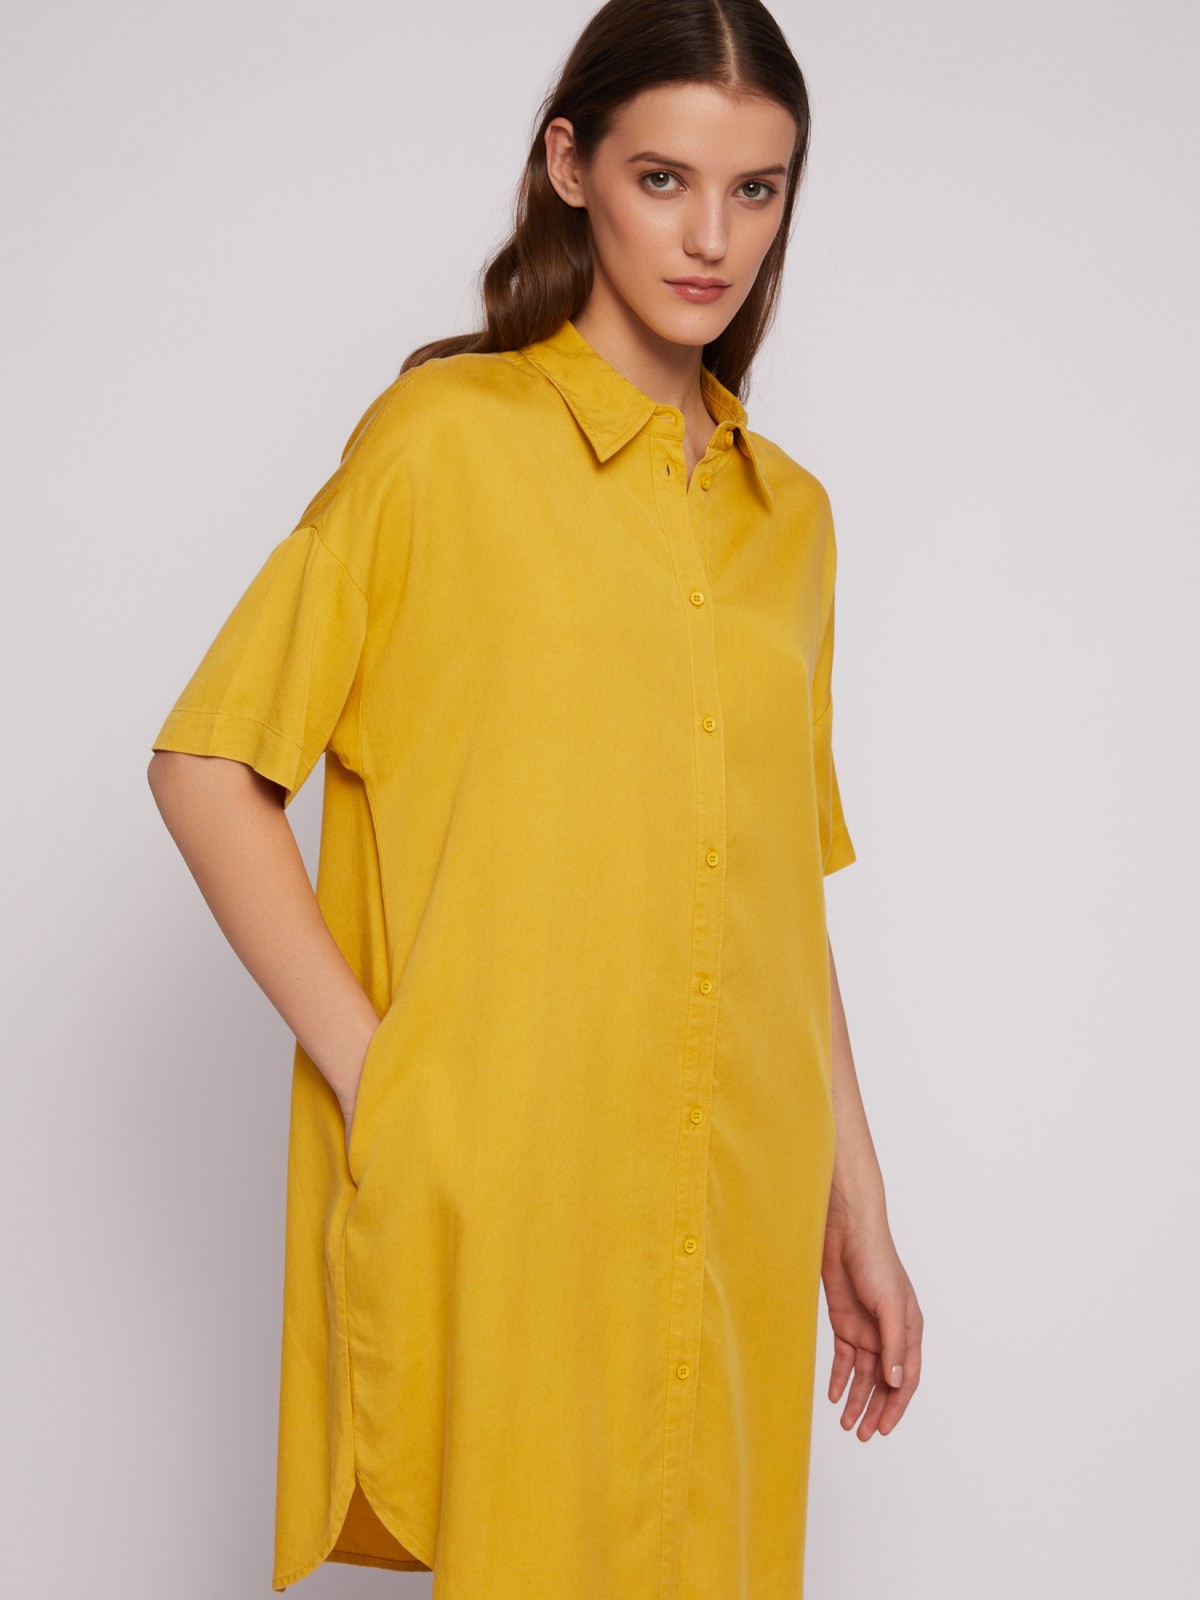 Платье-рубашка мини из лиоцелла на пуговицах zolla 02421827Y053, цвет горчичный, размер S - фото 4